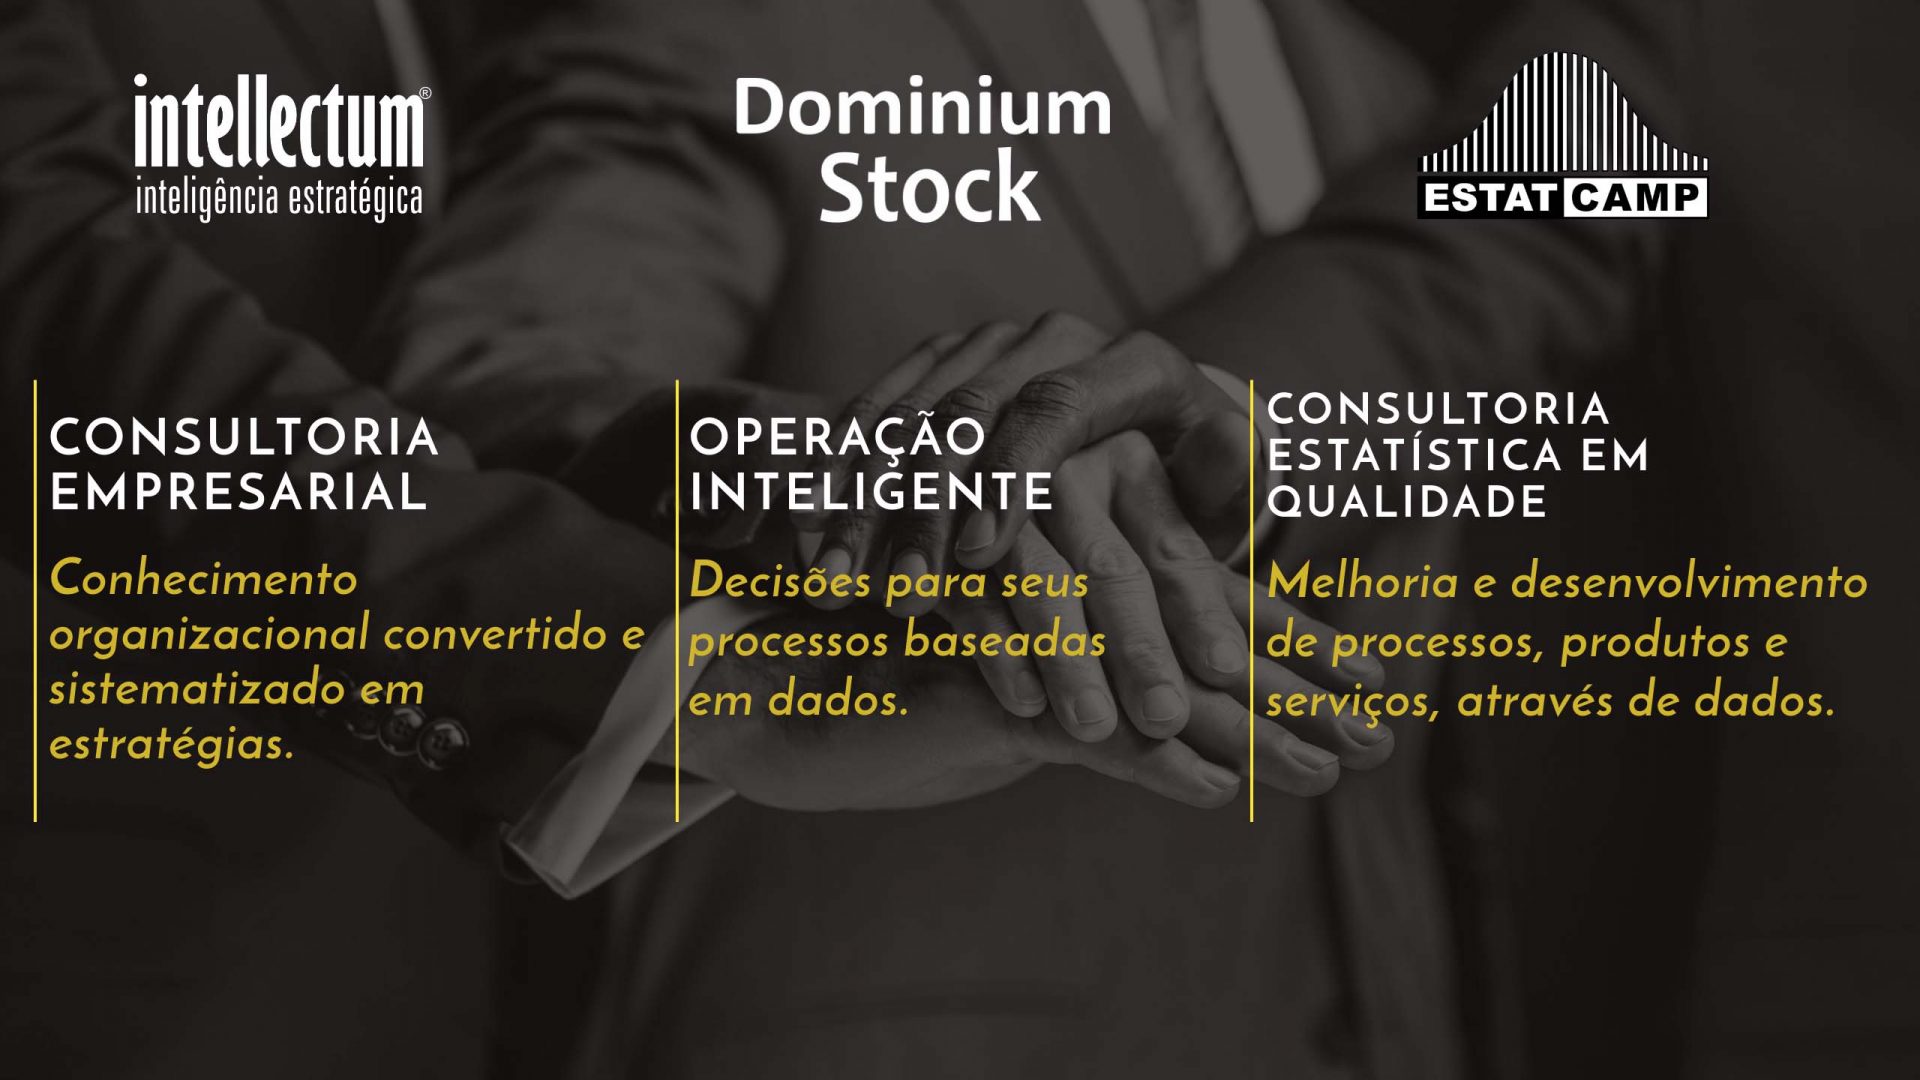 Intellectum Inteligência Estratégica, Dominium Stock e EstatCamp em estreia na Mercopar